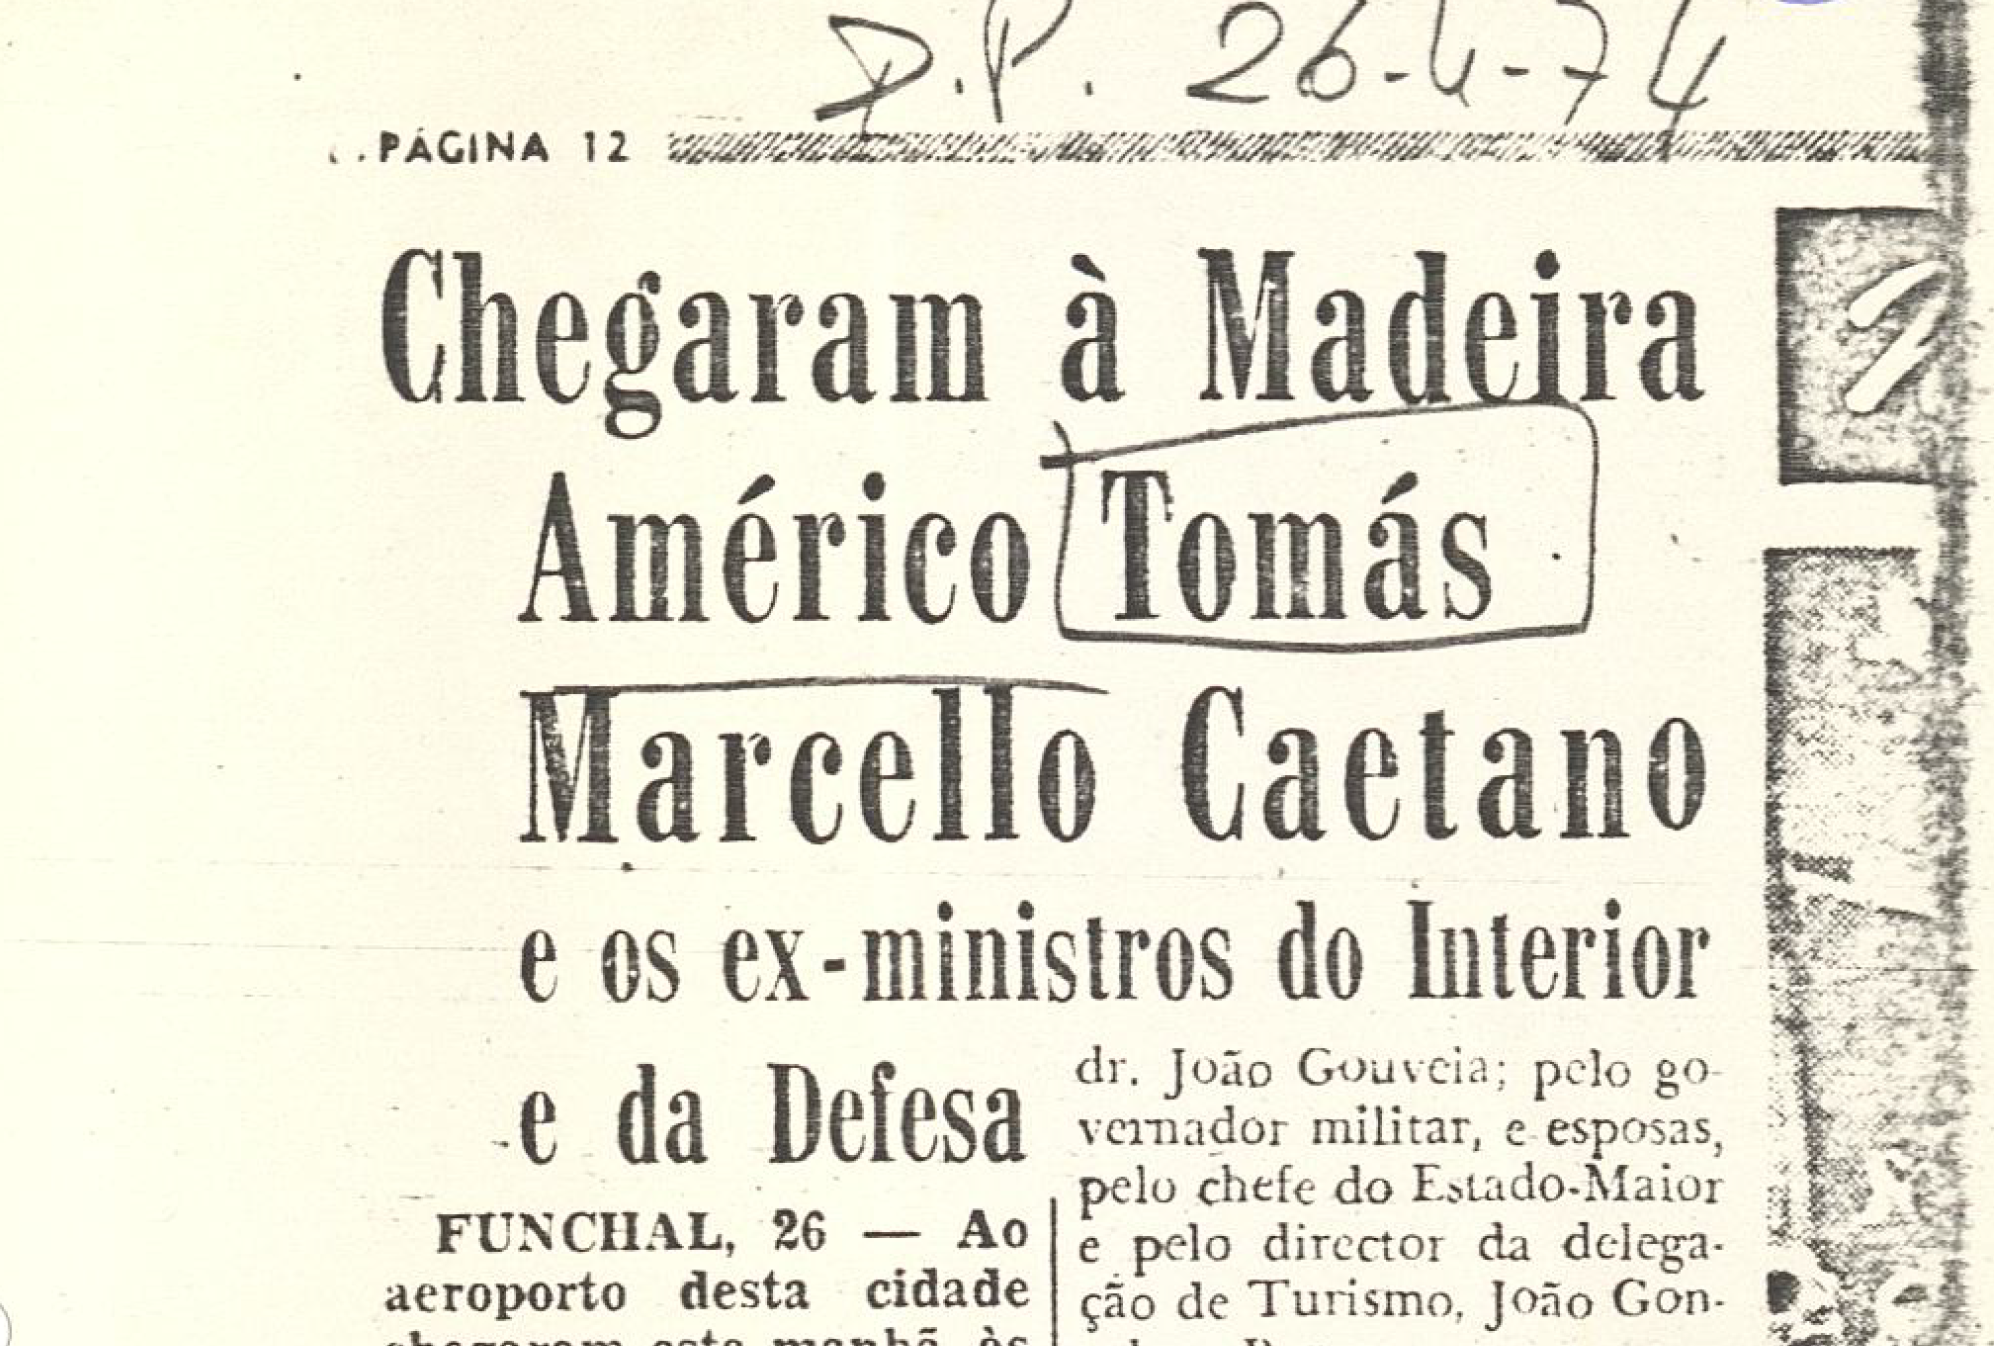 "Chegaram à Madeira Américo tomás Marcello Caetano e os ex-ministros do Interior da Defesa"